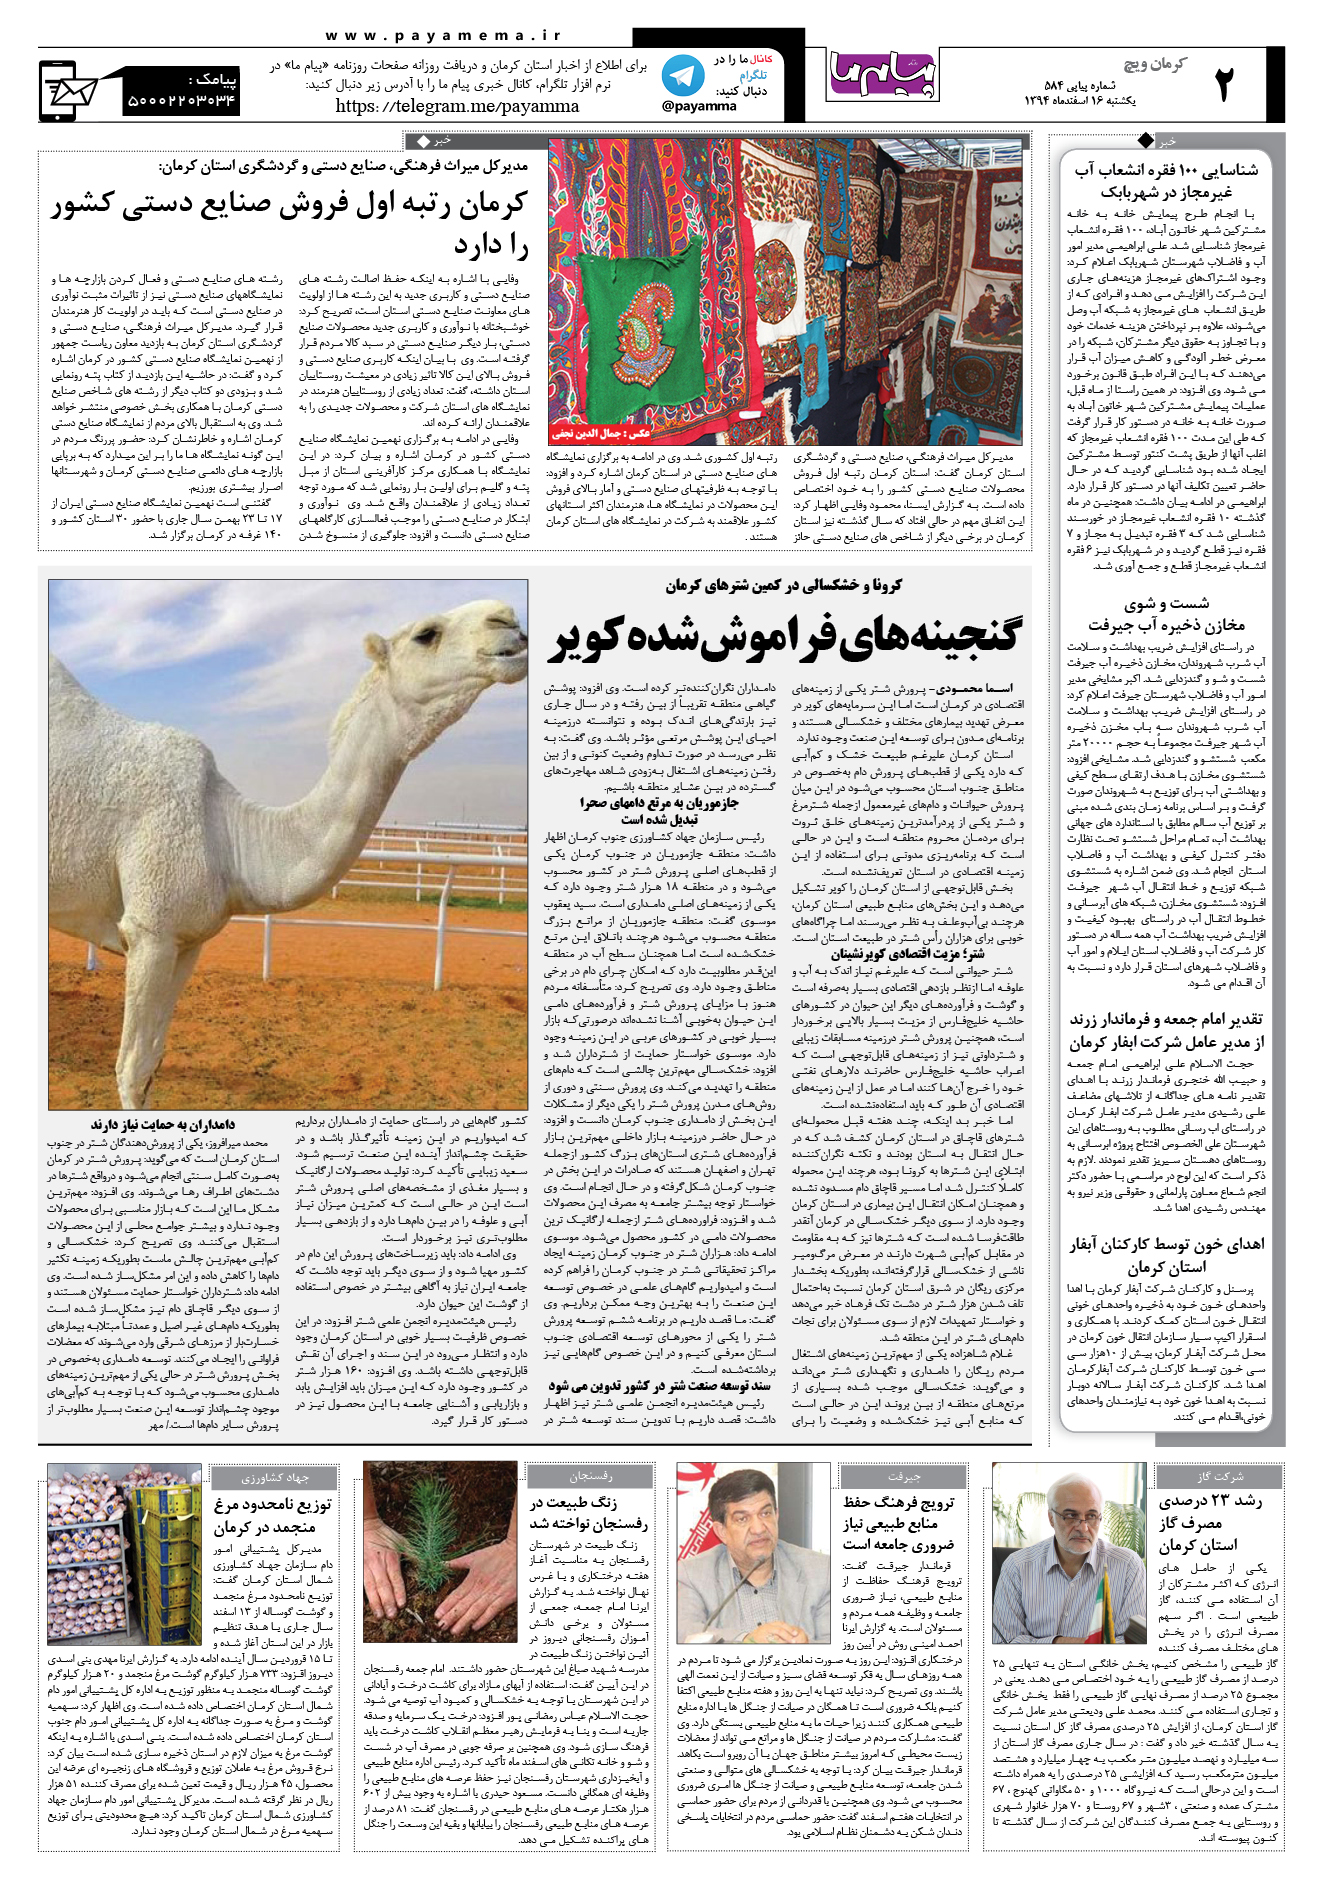 صفحه کرمان ویج شماره 584 روزنامه پیام ما